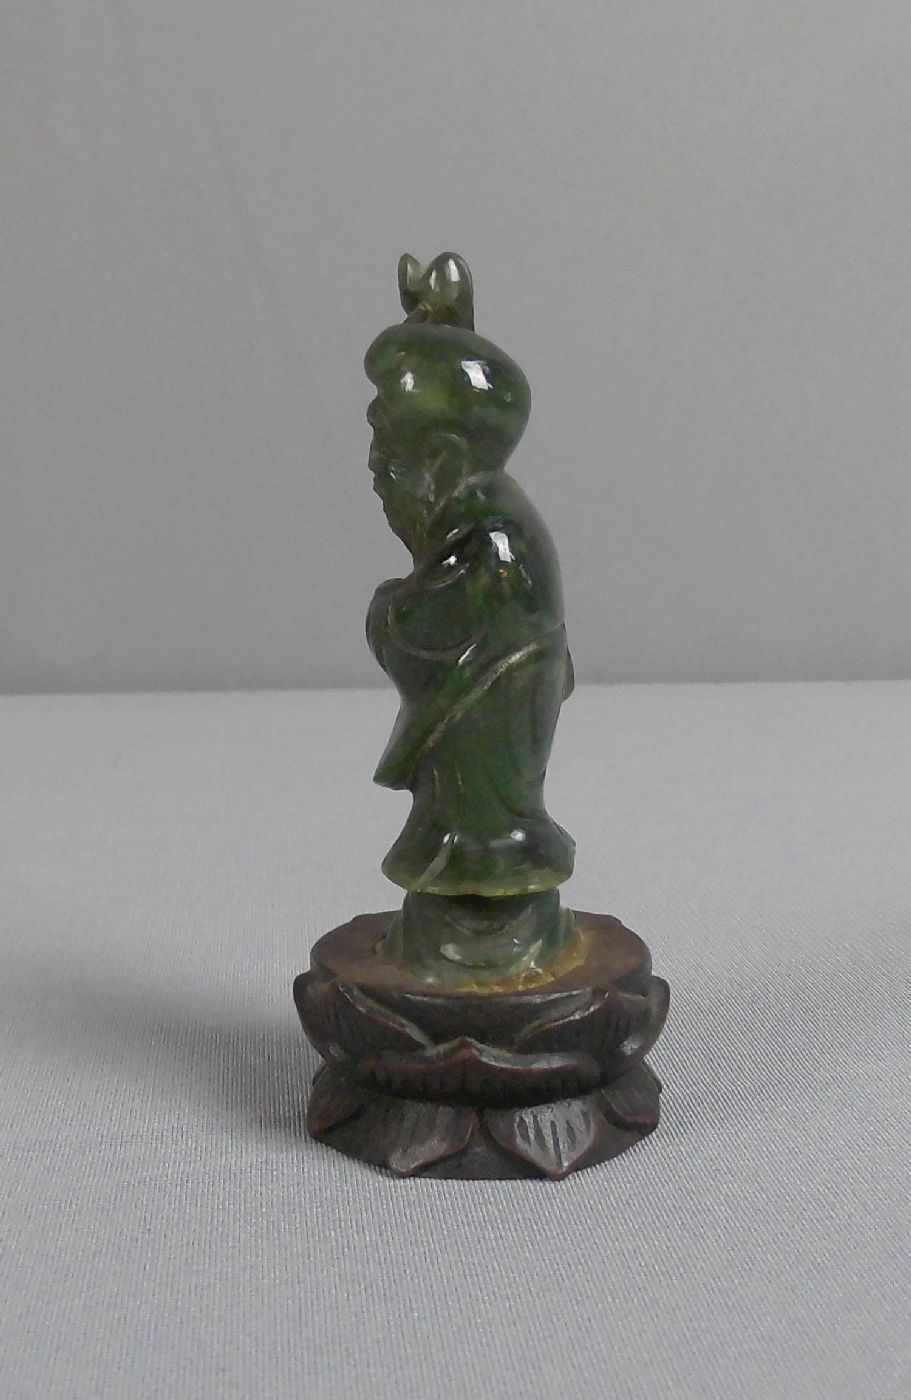 FIGUR DER GOTTHEIT "SHOULAO", China, um 1900, "spinatgrüne" Jade und Holz. Stehende Jadefigur der - Image 2 of 4